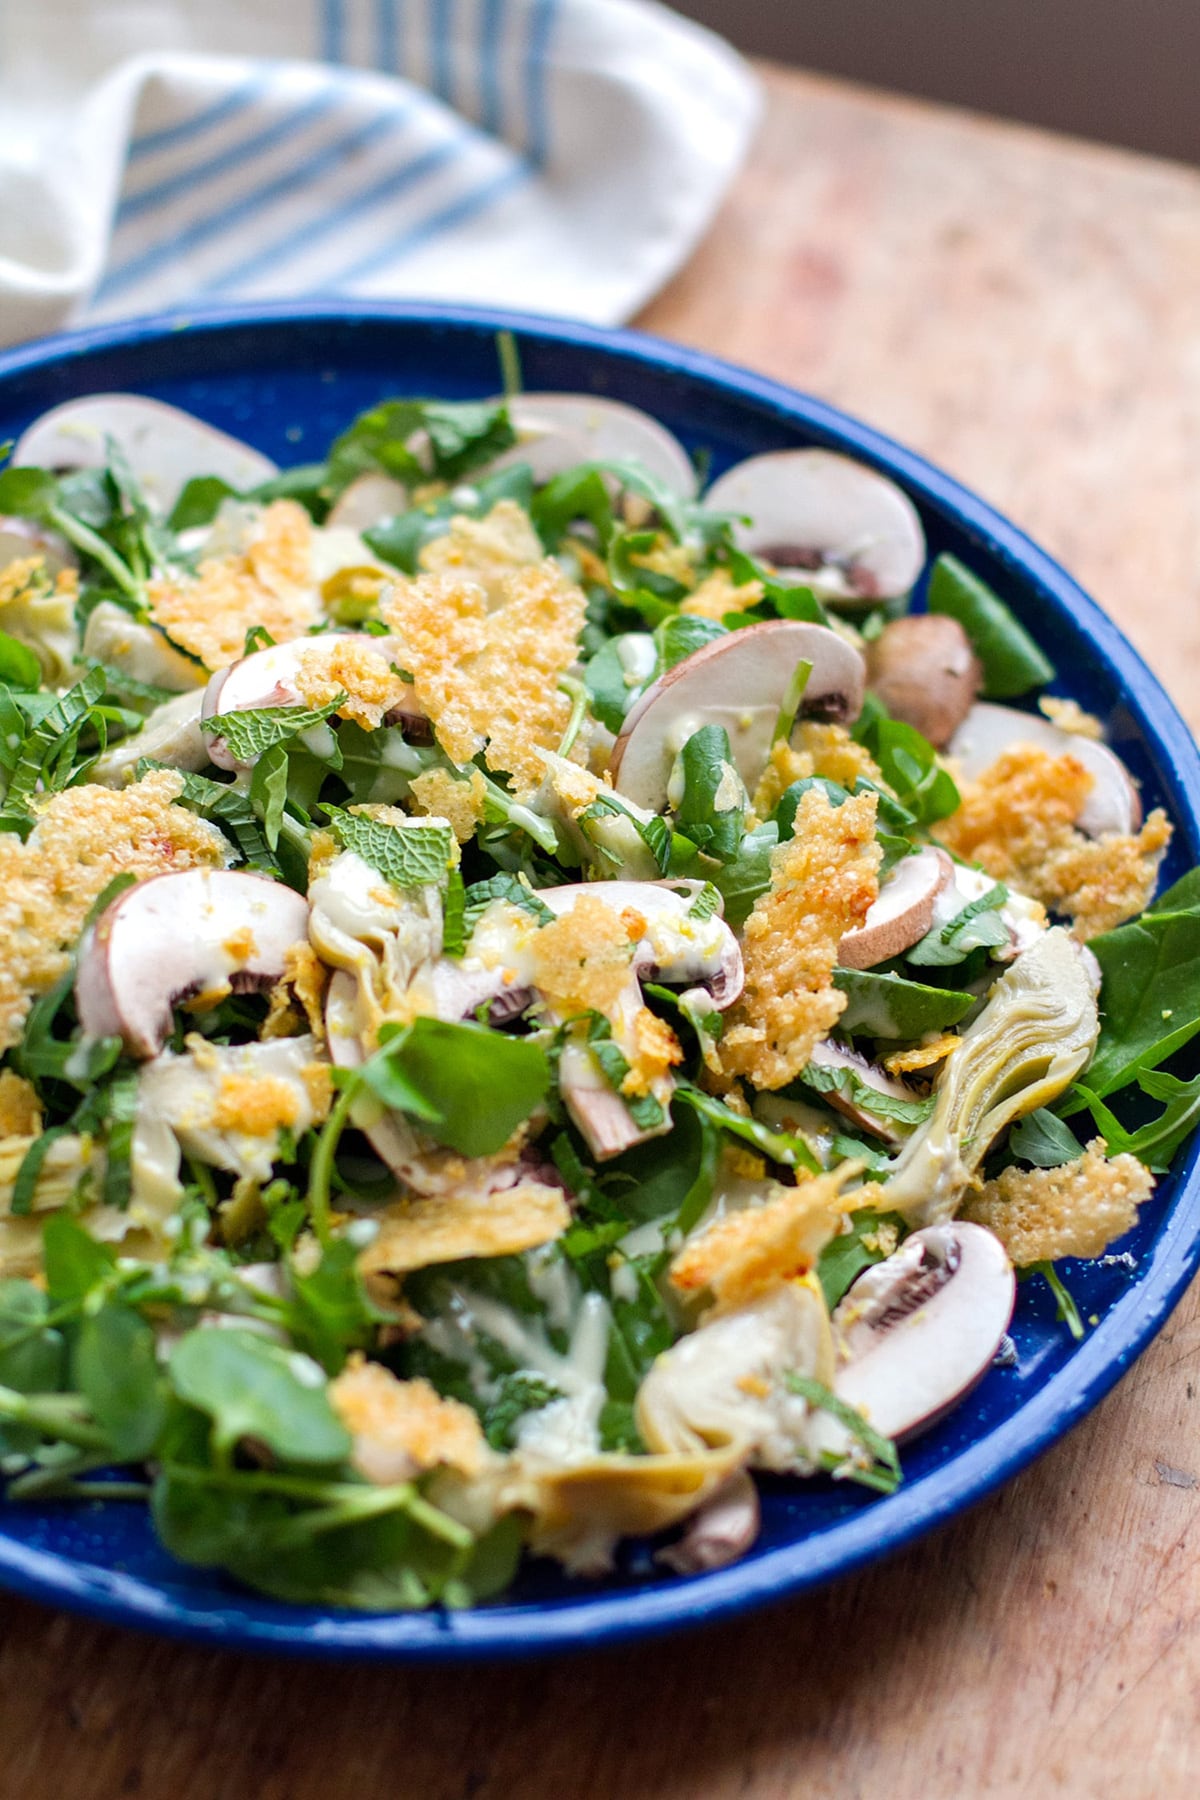 Mushroom Salad With Crispy Parmesan and Artichokes